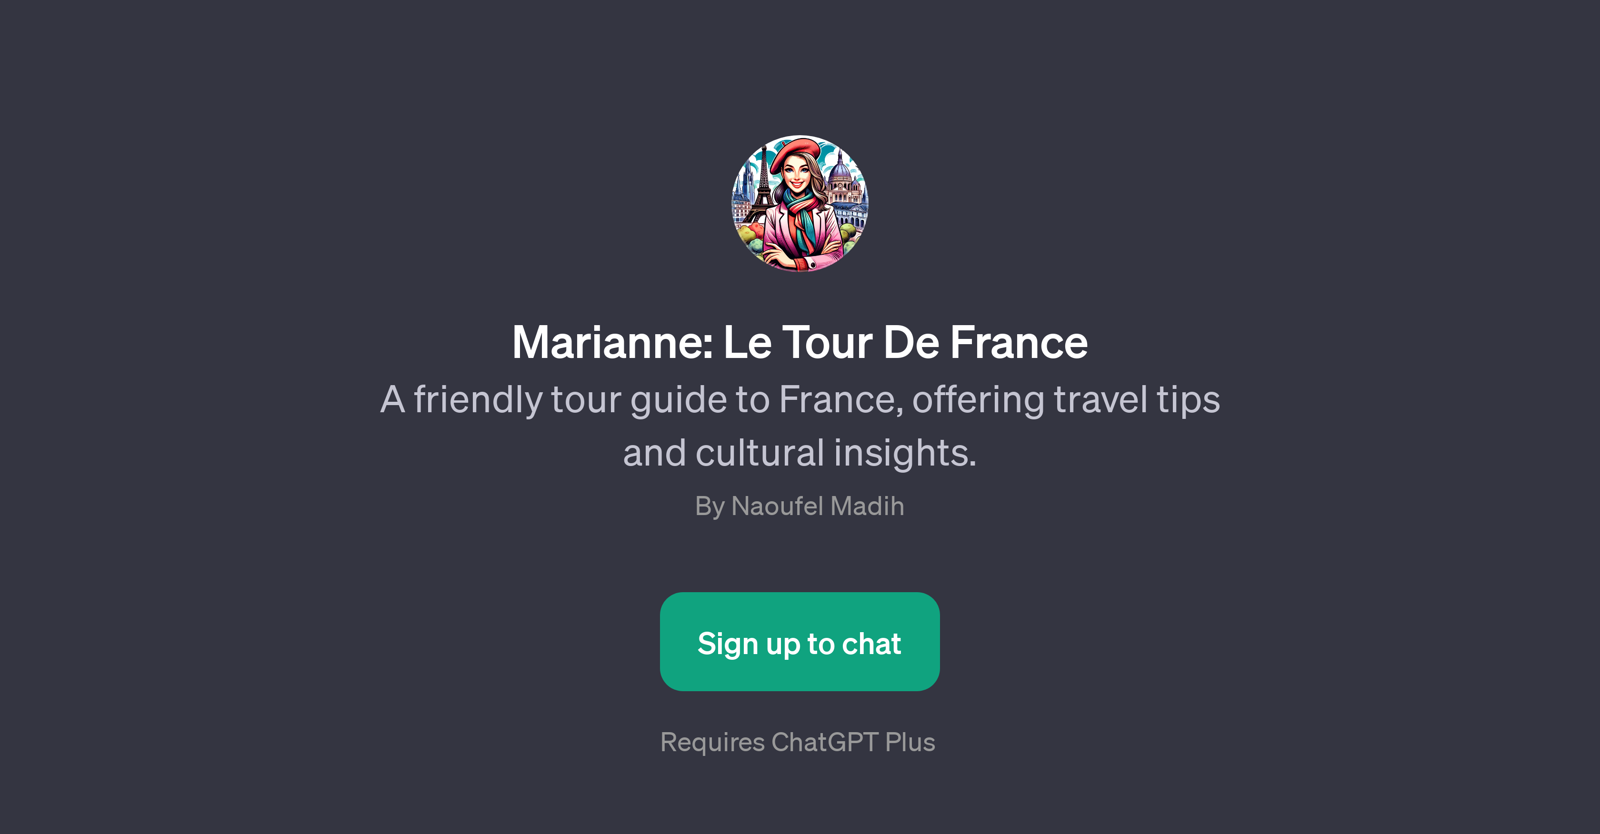 Marianne: Le Tour De France website